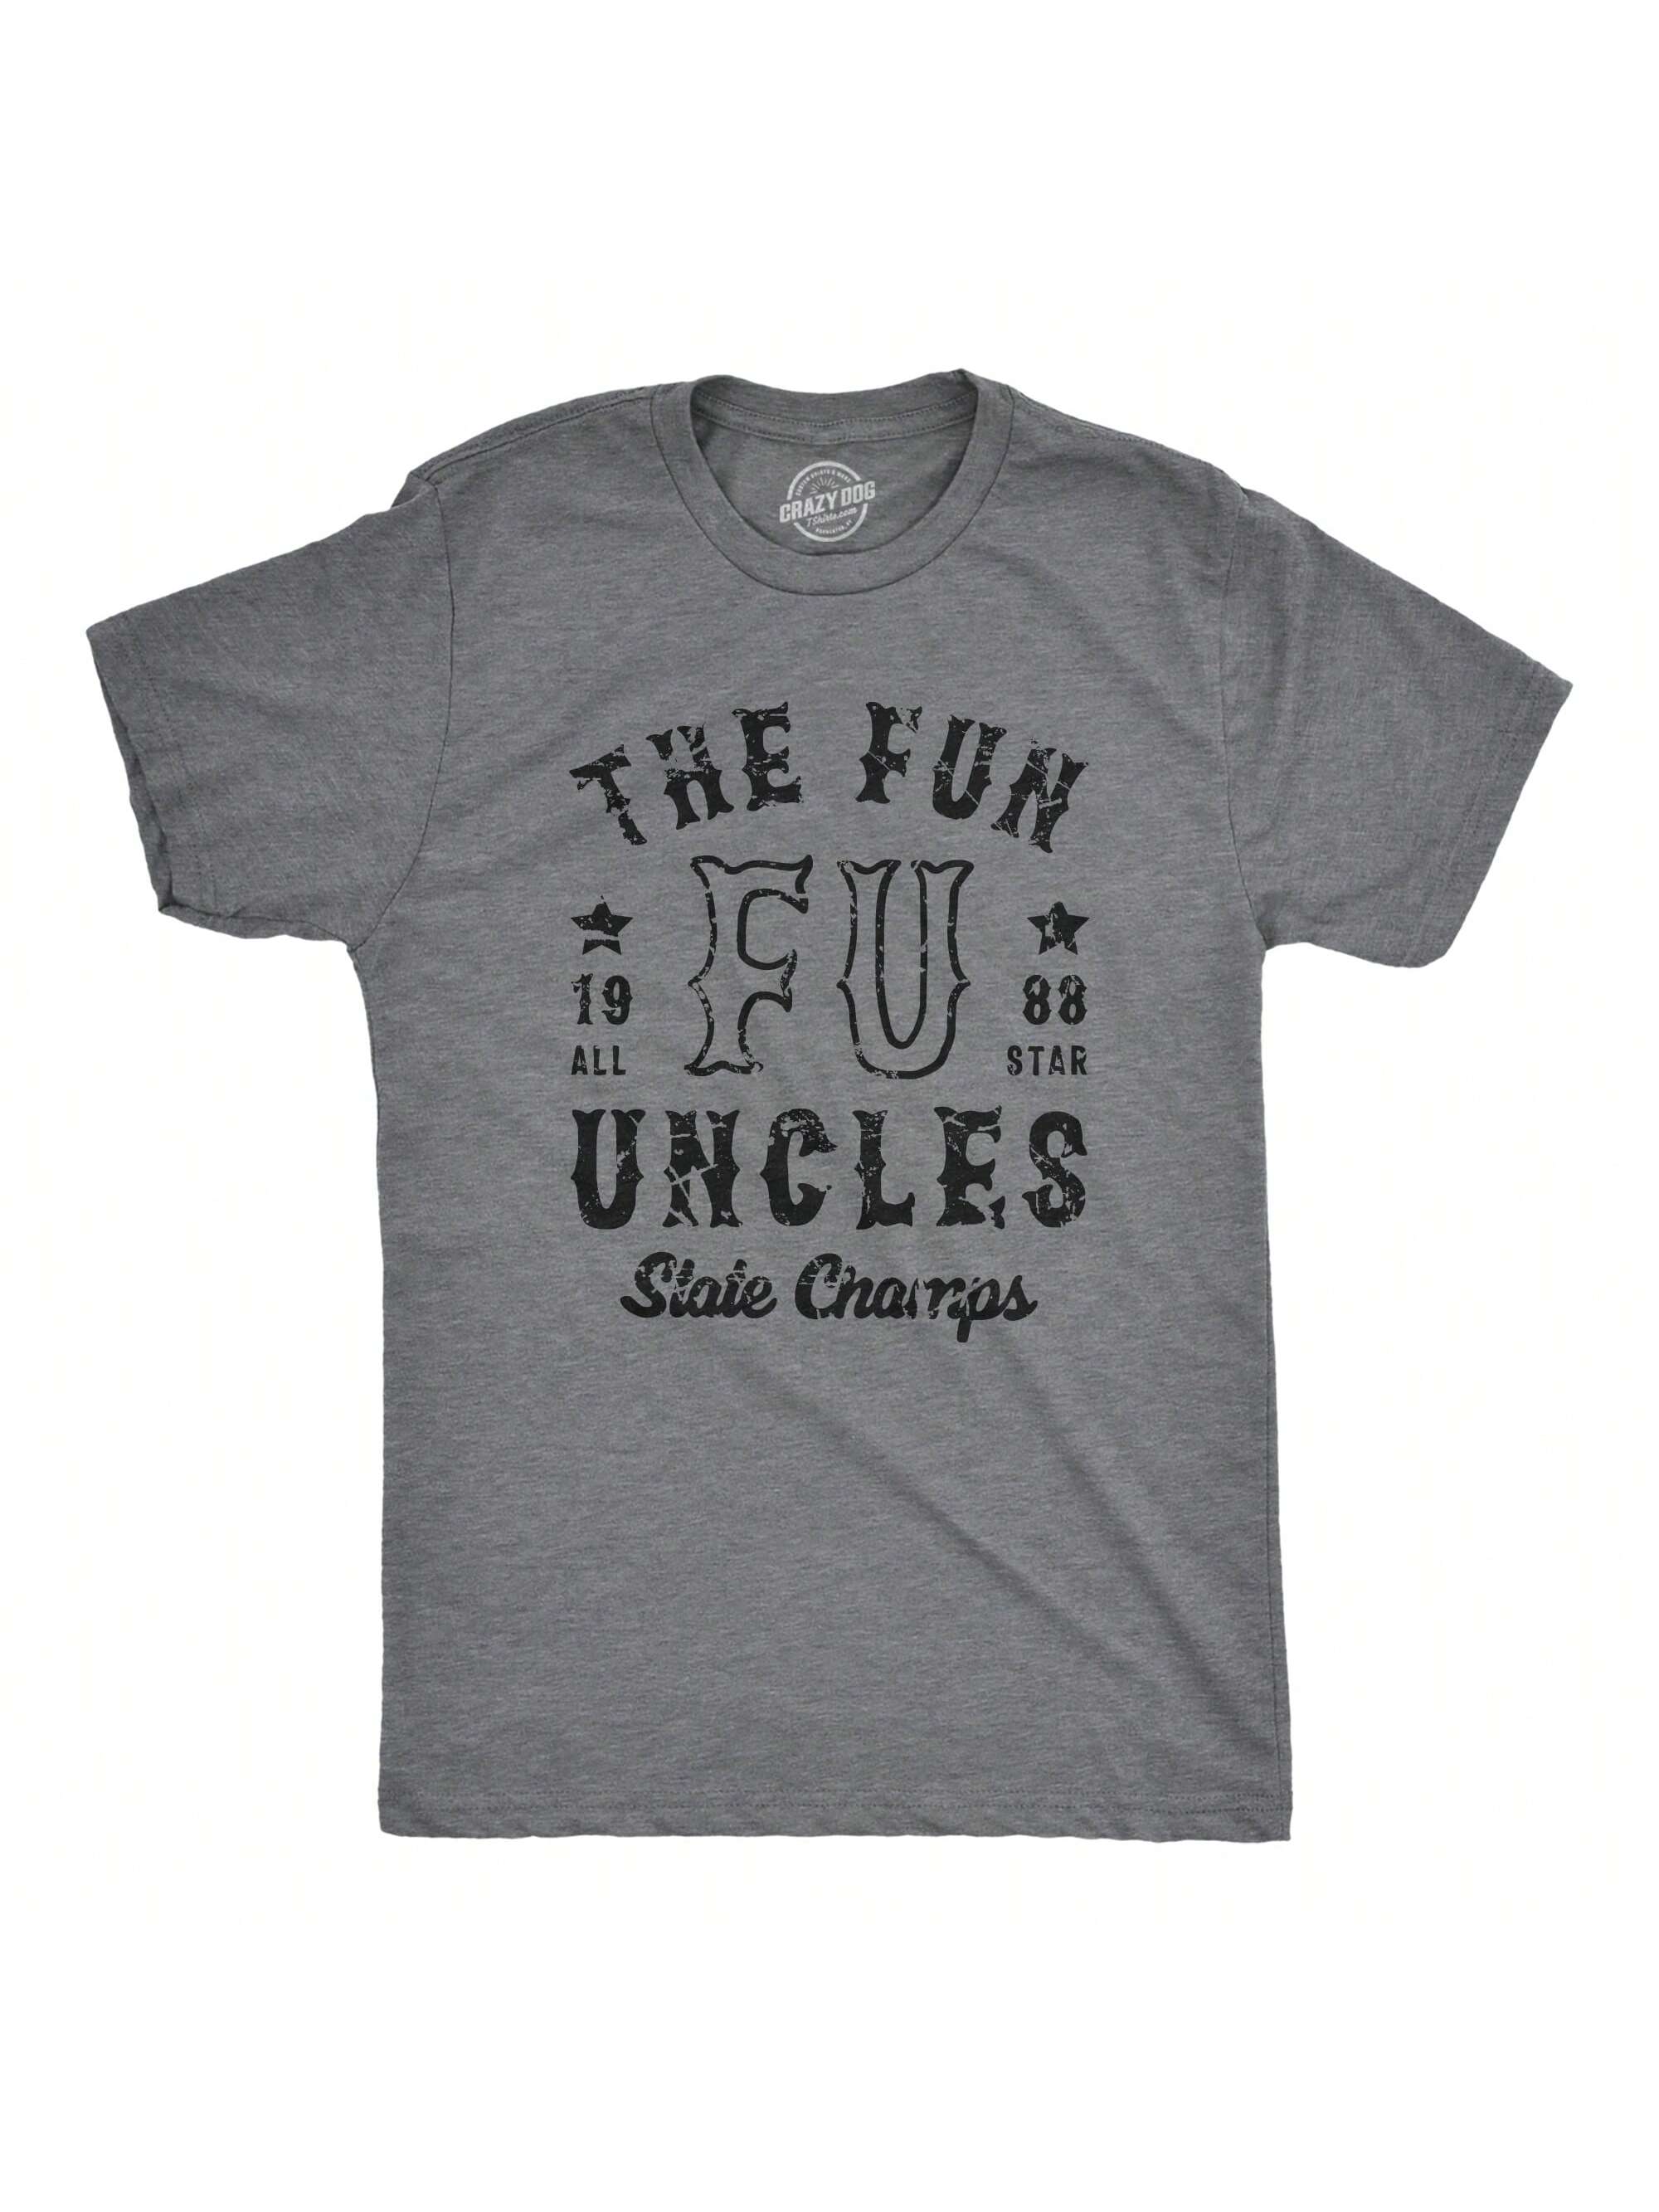 Мужская футболка «Они не мои» «Я дядя», темный хизер серый - funcles мои приоритеты серый